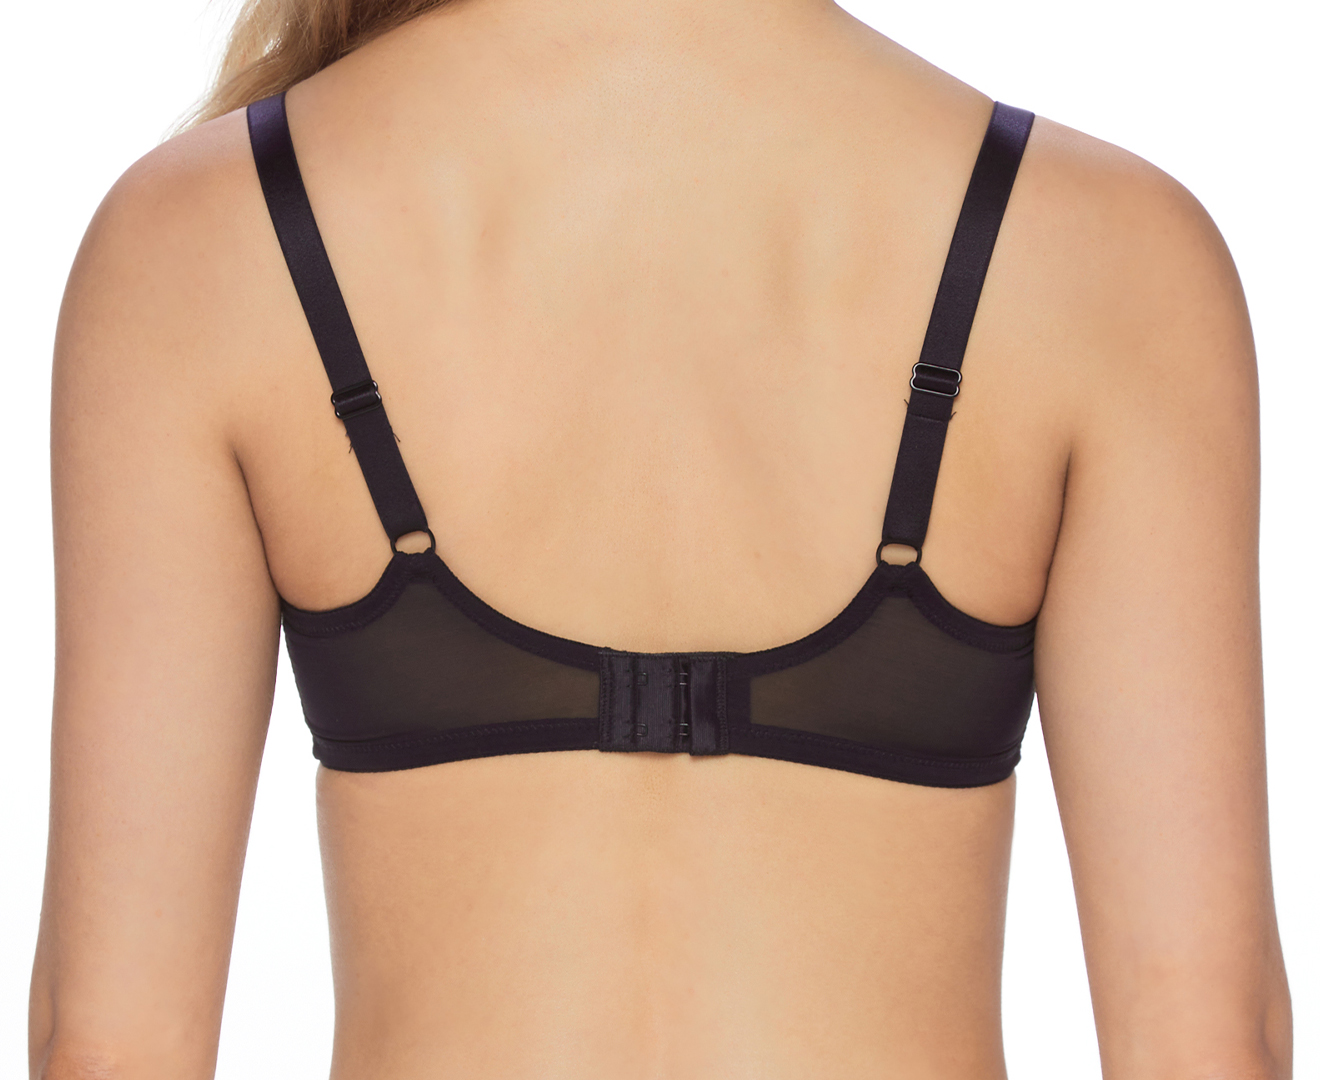 Formfit by Triumph Women's Lace Comfort Bra - Black - Size 22E